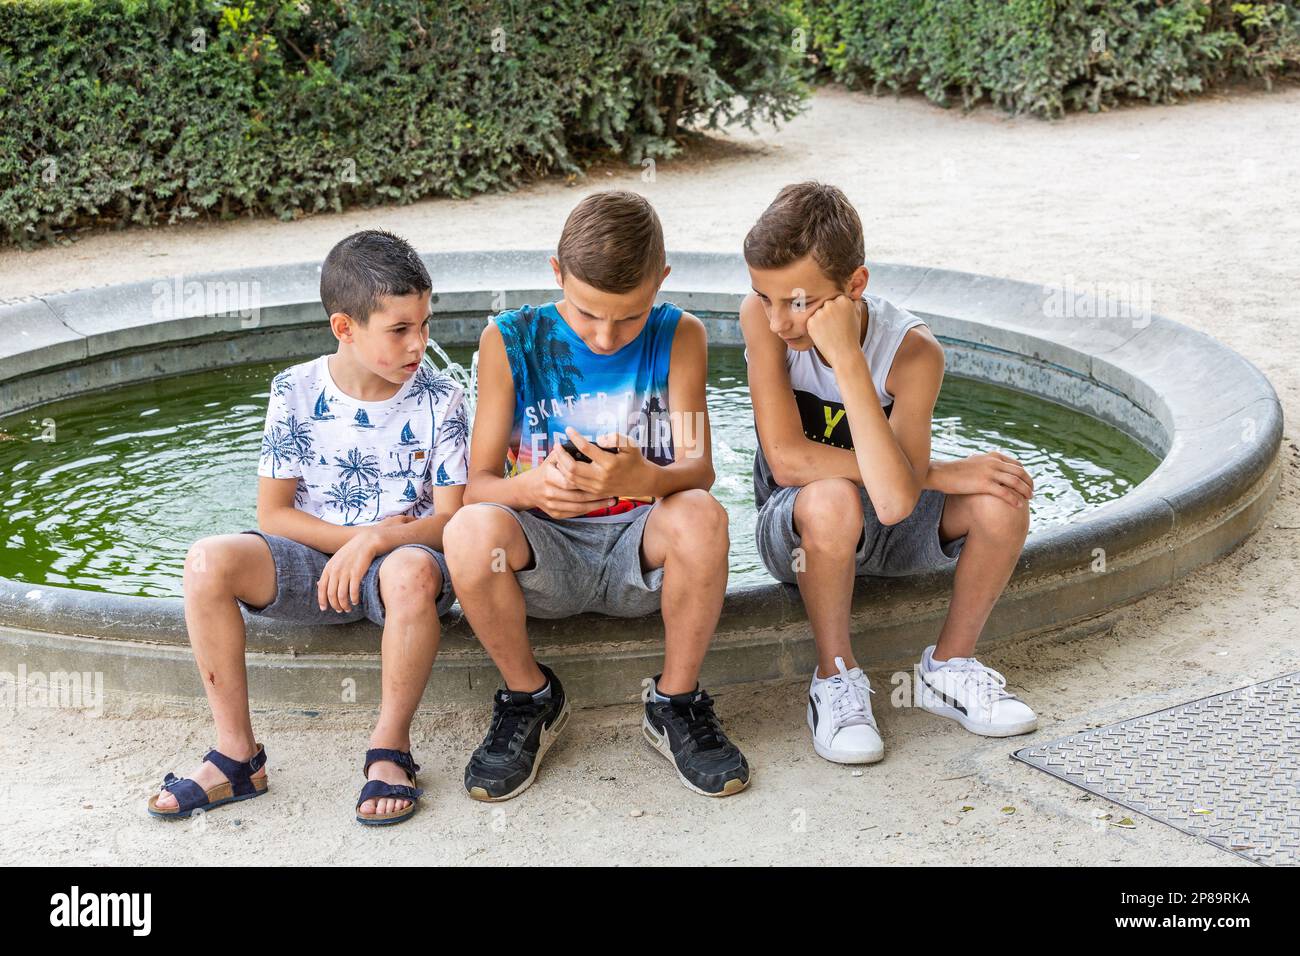 Tre ragazzi, seduti sul bordo del bacino di una fontana, guardando lo smartphone che uno di loro sta usando. Bruxelles. Foto Stock